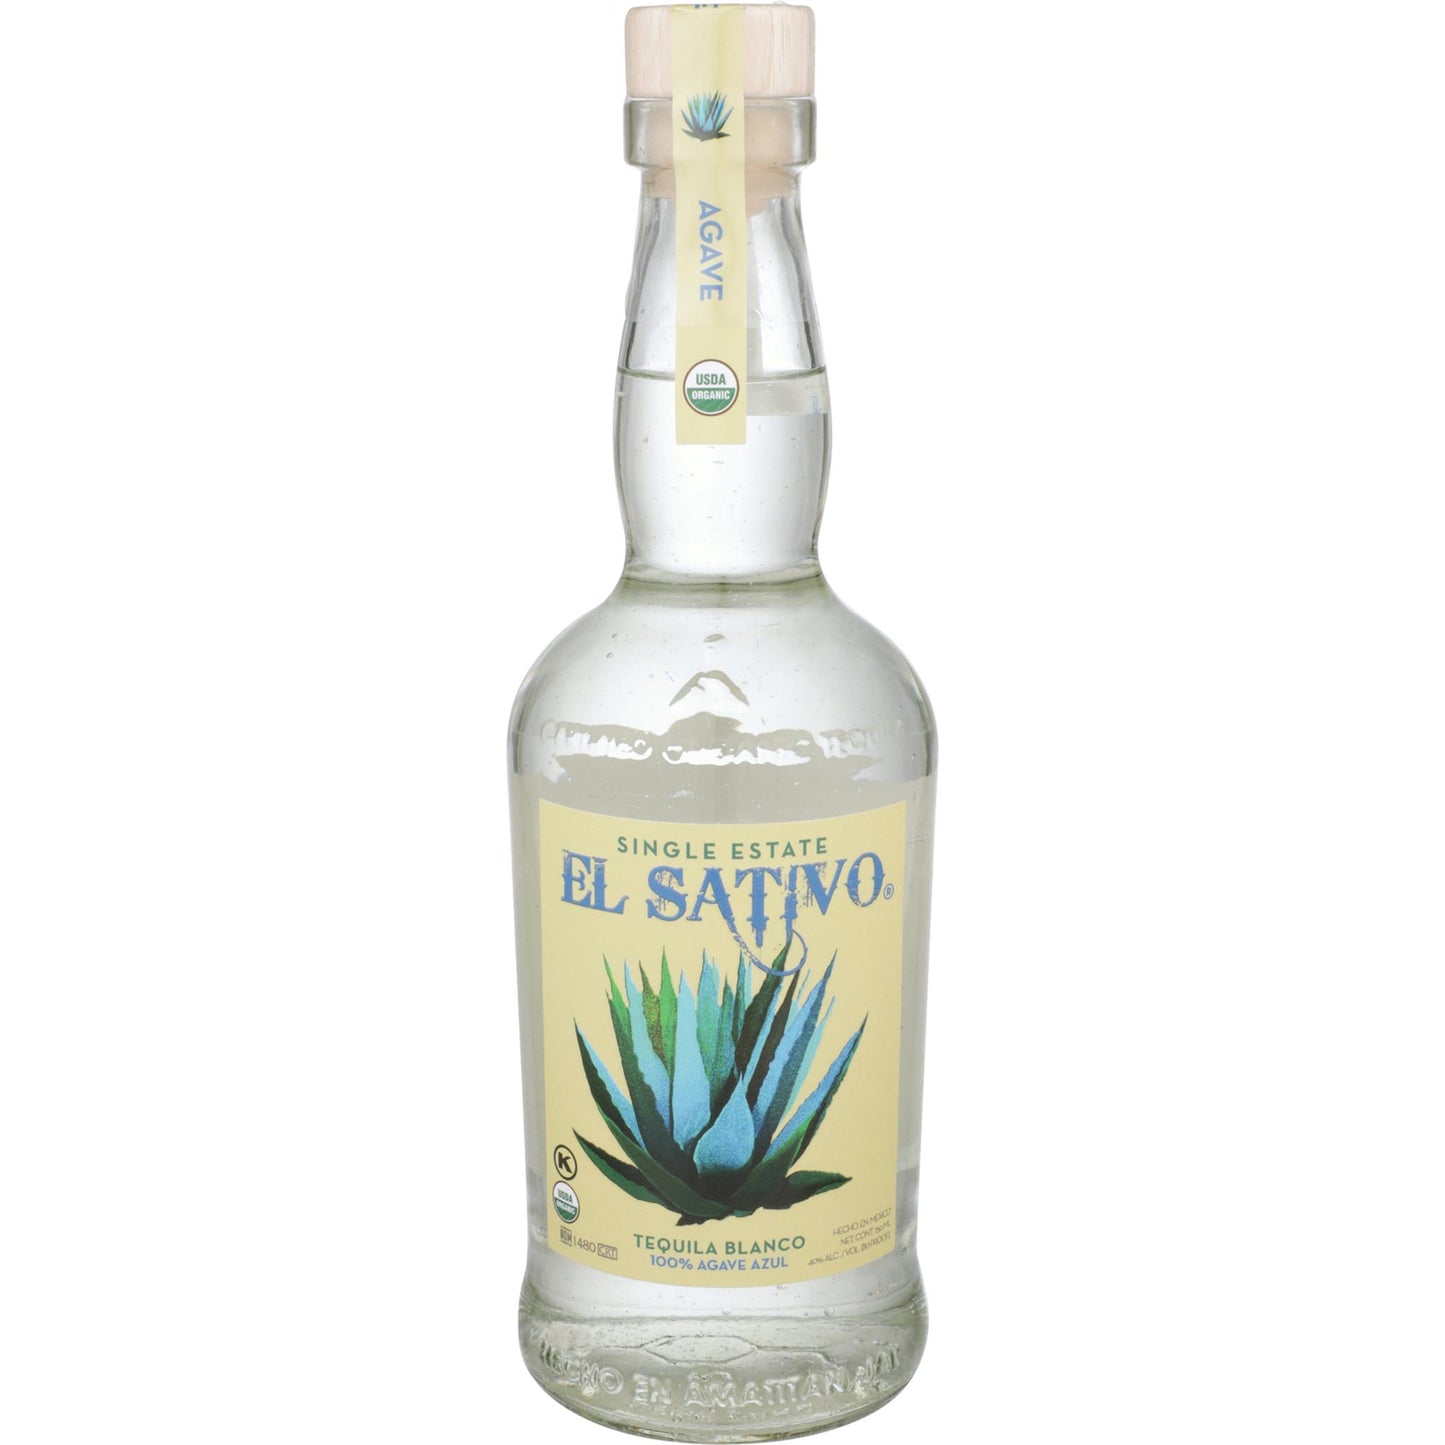 EL Sativo Tequila Blanco Single Estate - Liquor Geeks